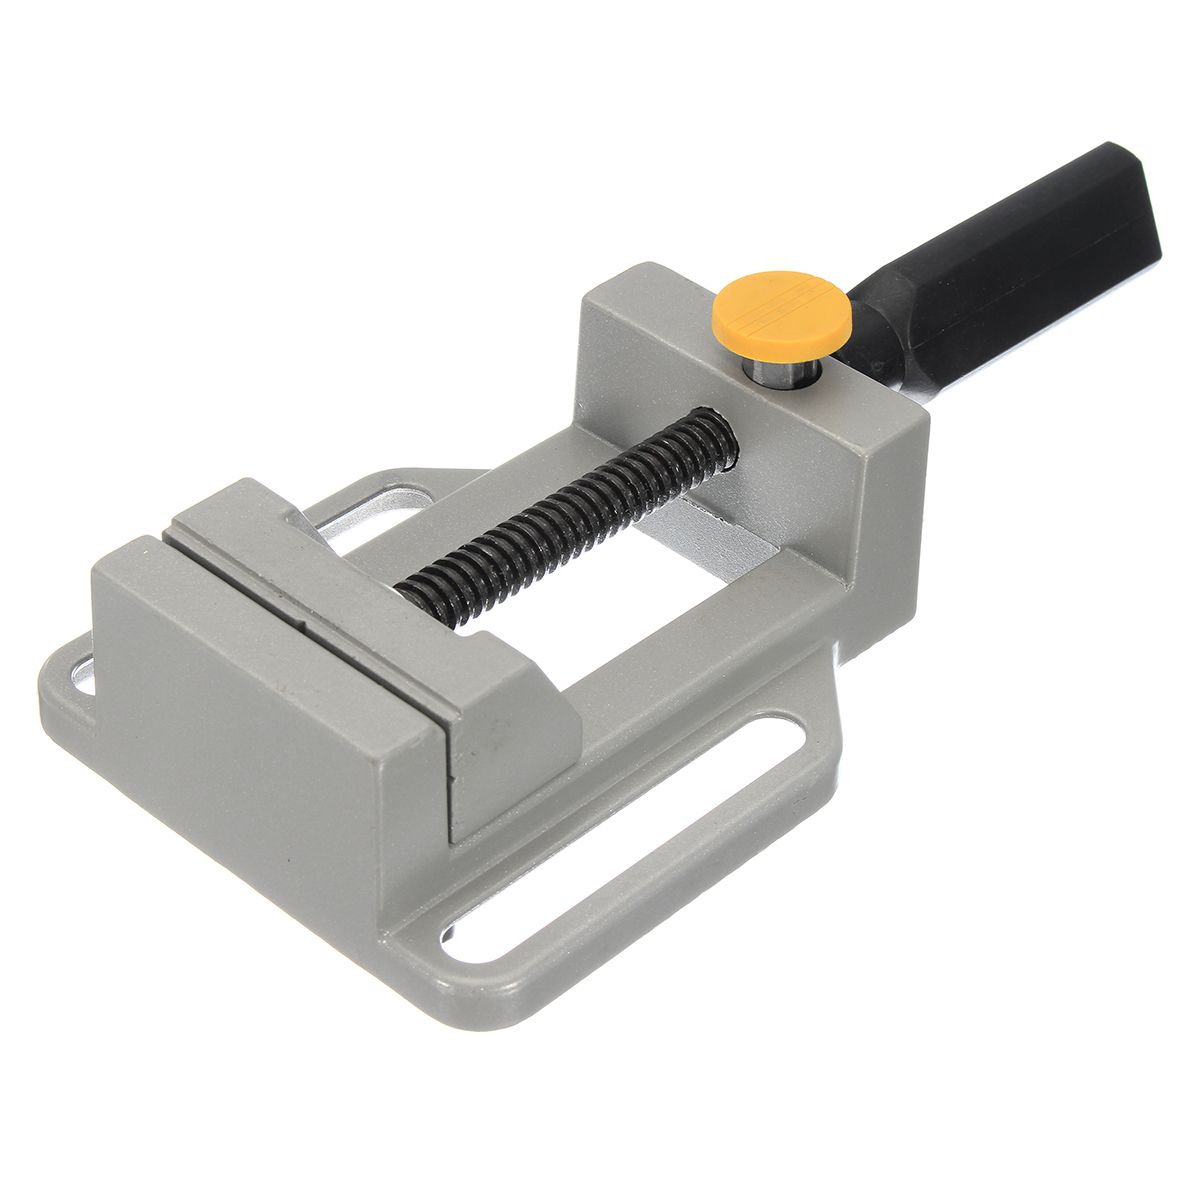 Drill-Press-Vises-Clamp-Bench-Table-Mechanic-Machine-Repair-Tool-DIY-Grinding-1215653